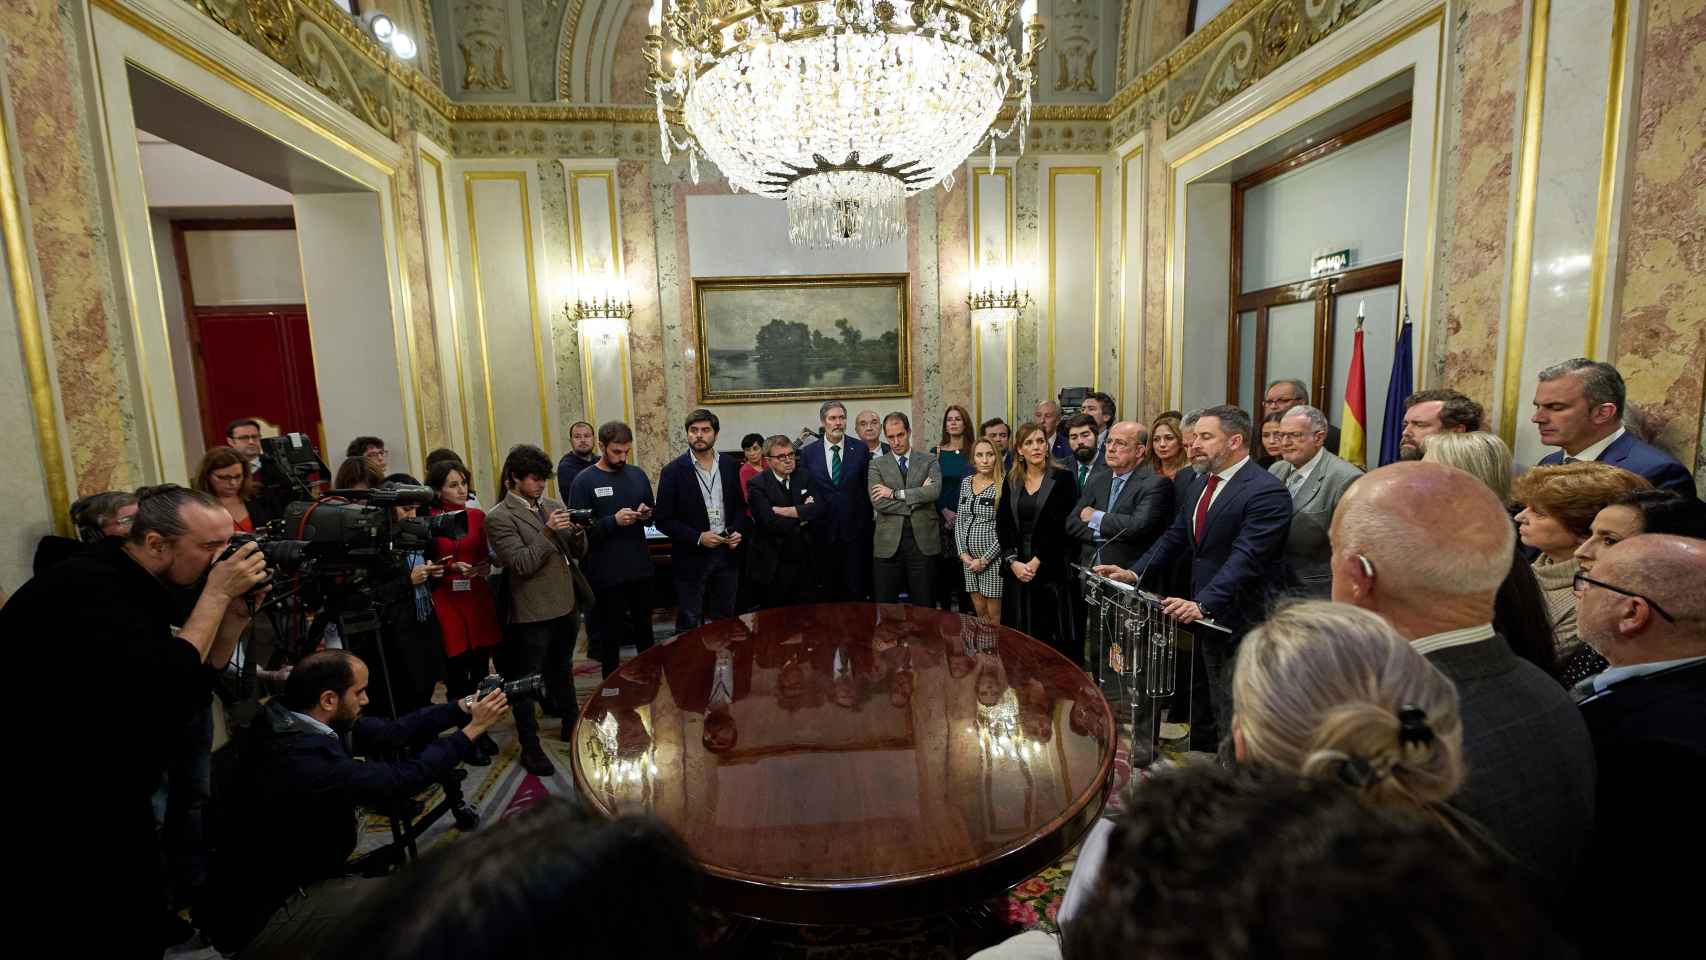 El líder de Vox, Santiago Abascal, interviene en el Congreso tras abandonar el pleno, el 15 de diciembre.